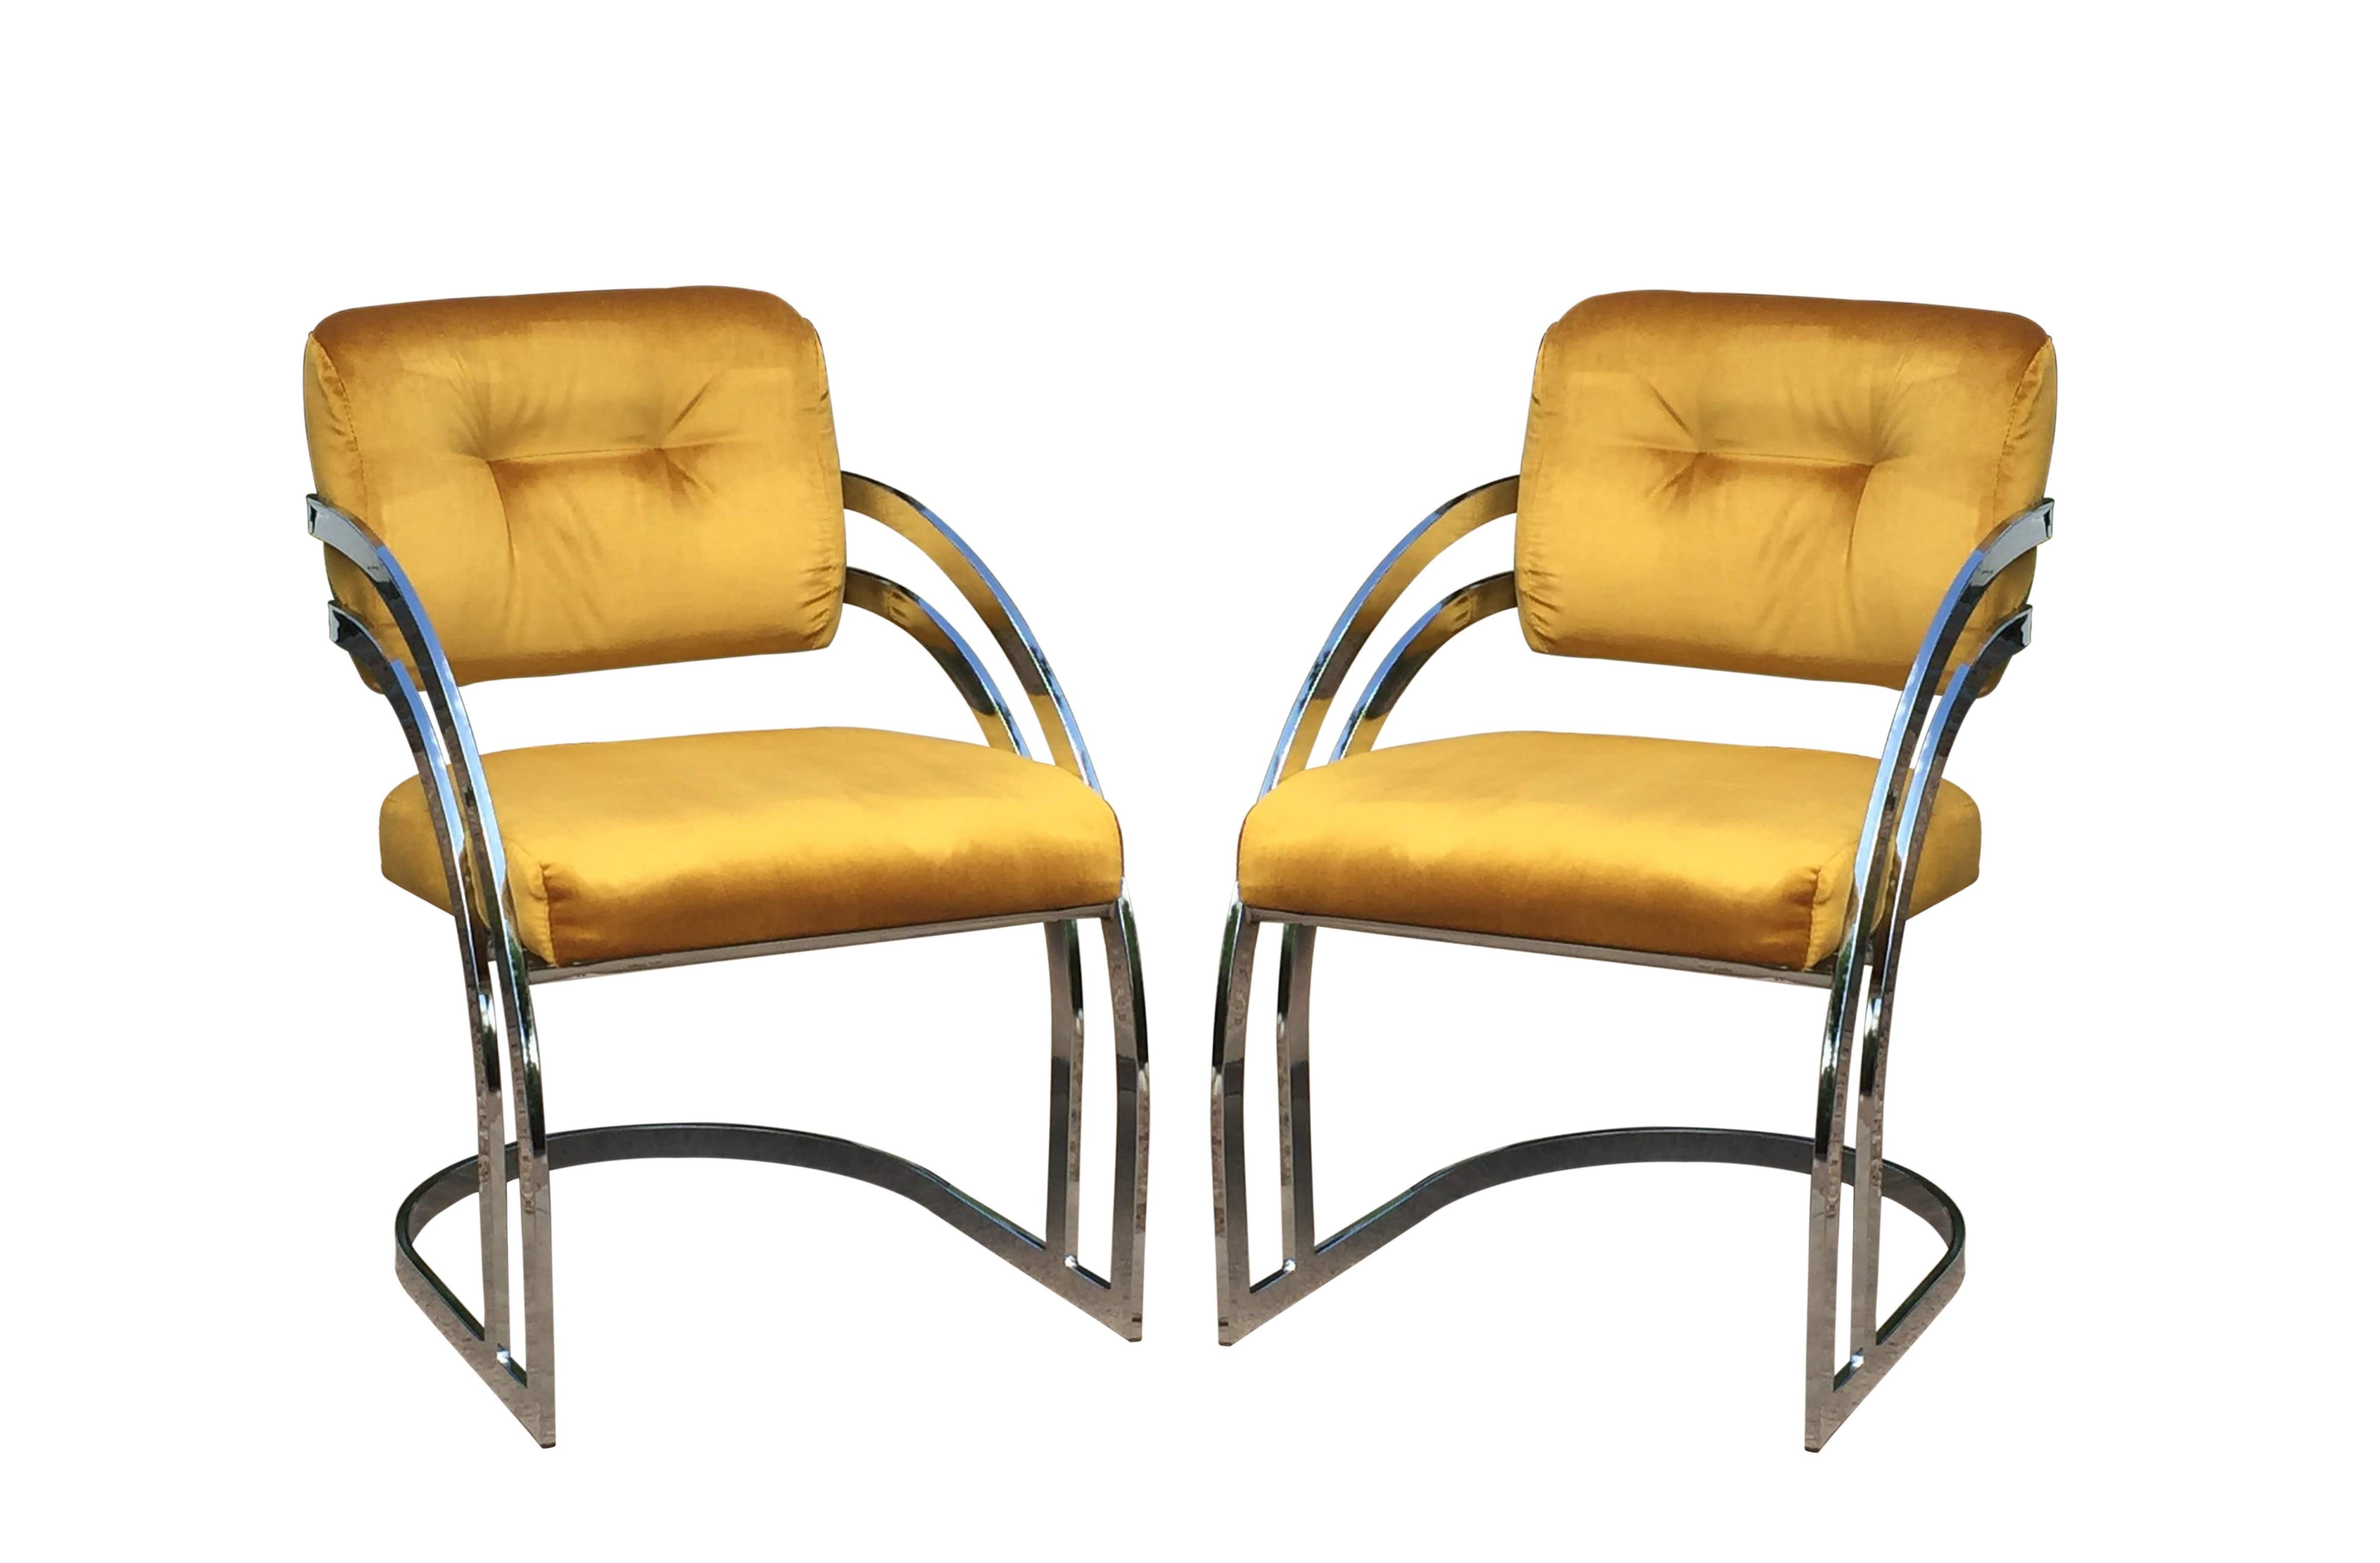 Skulpturale Esszimmerstühle aus Chrom in der Art von Milo Baughman. Professionell gepolstert in einem goldfarbenen Samtstoff sorgt er mit seinen verchromten Rahmen für eine moderne Ausstrahlung. Die Rückenlehnen der Stühle haben ein dreifaches